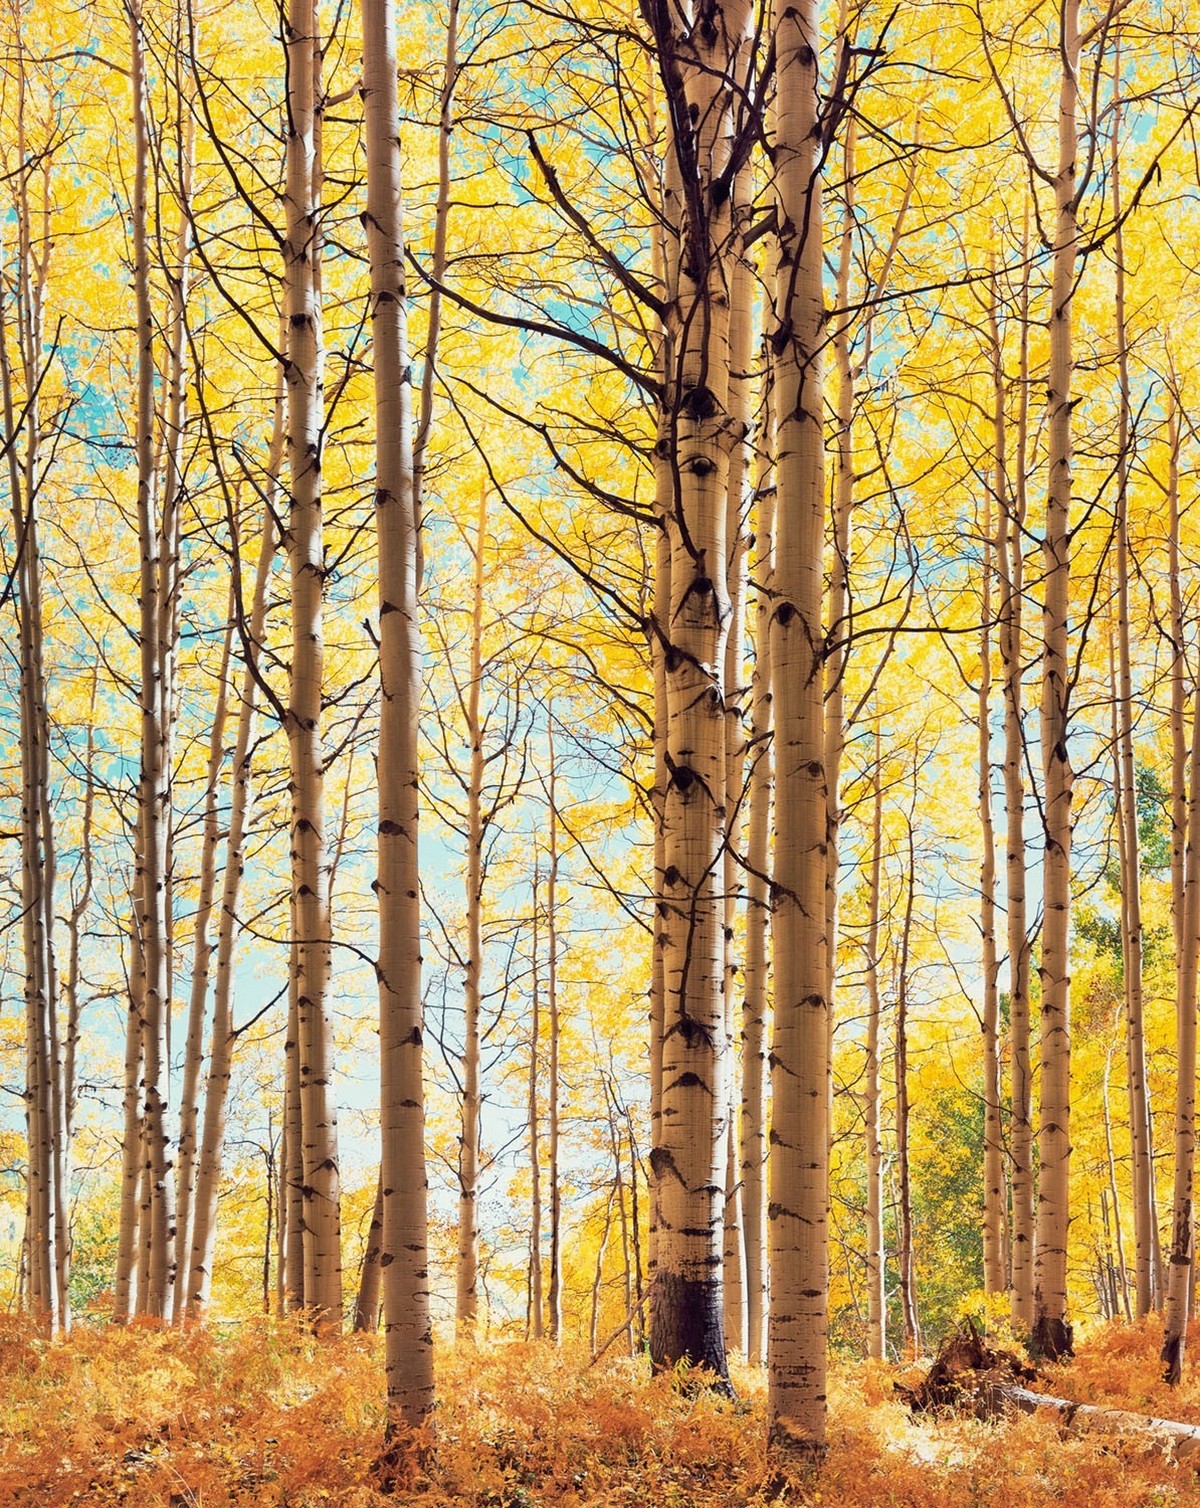 Красота деревьев на снимках Кристофера Бёркетта